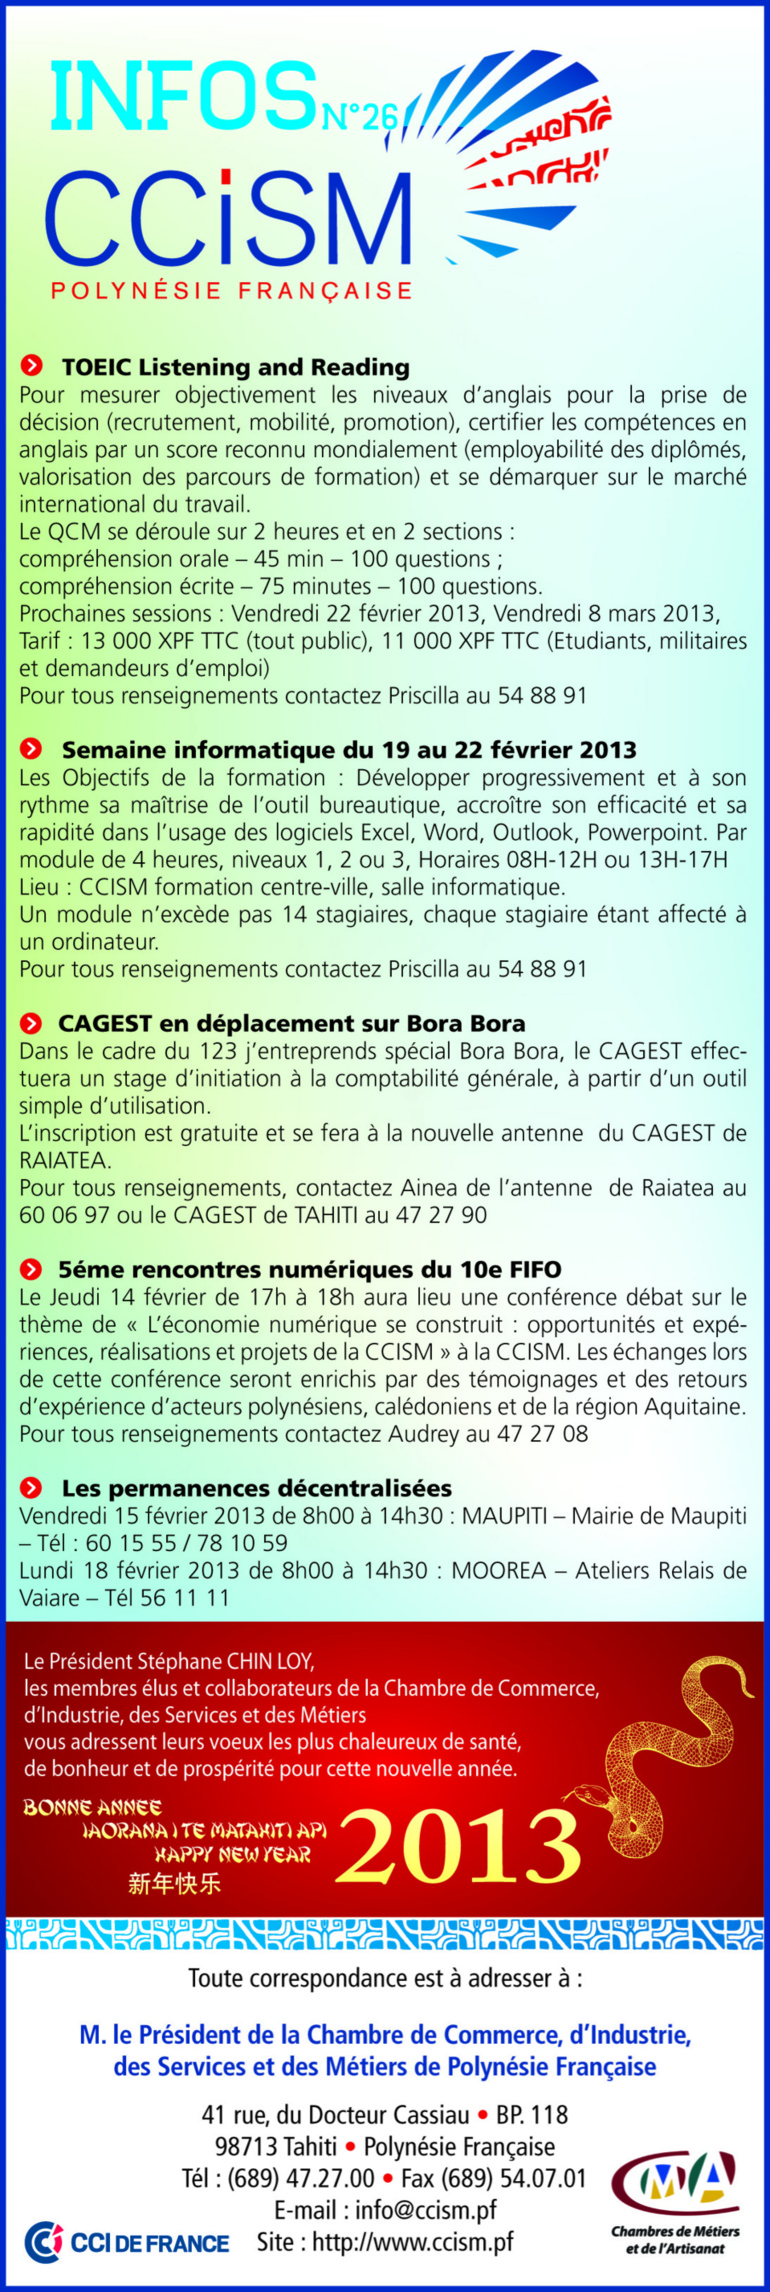 Infos CCISM N°26